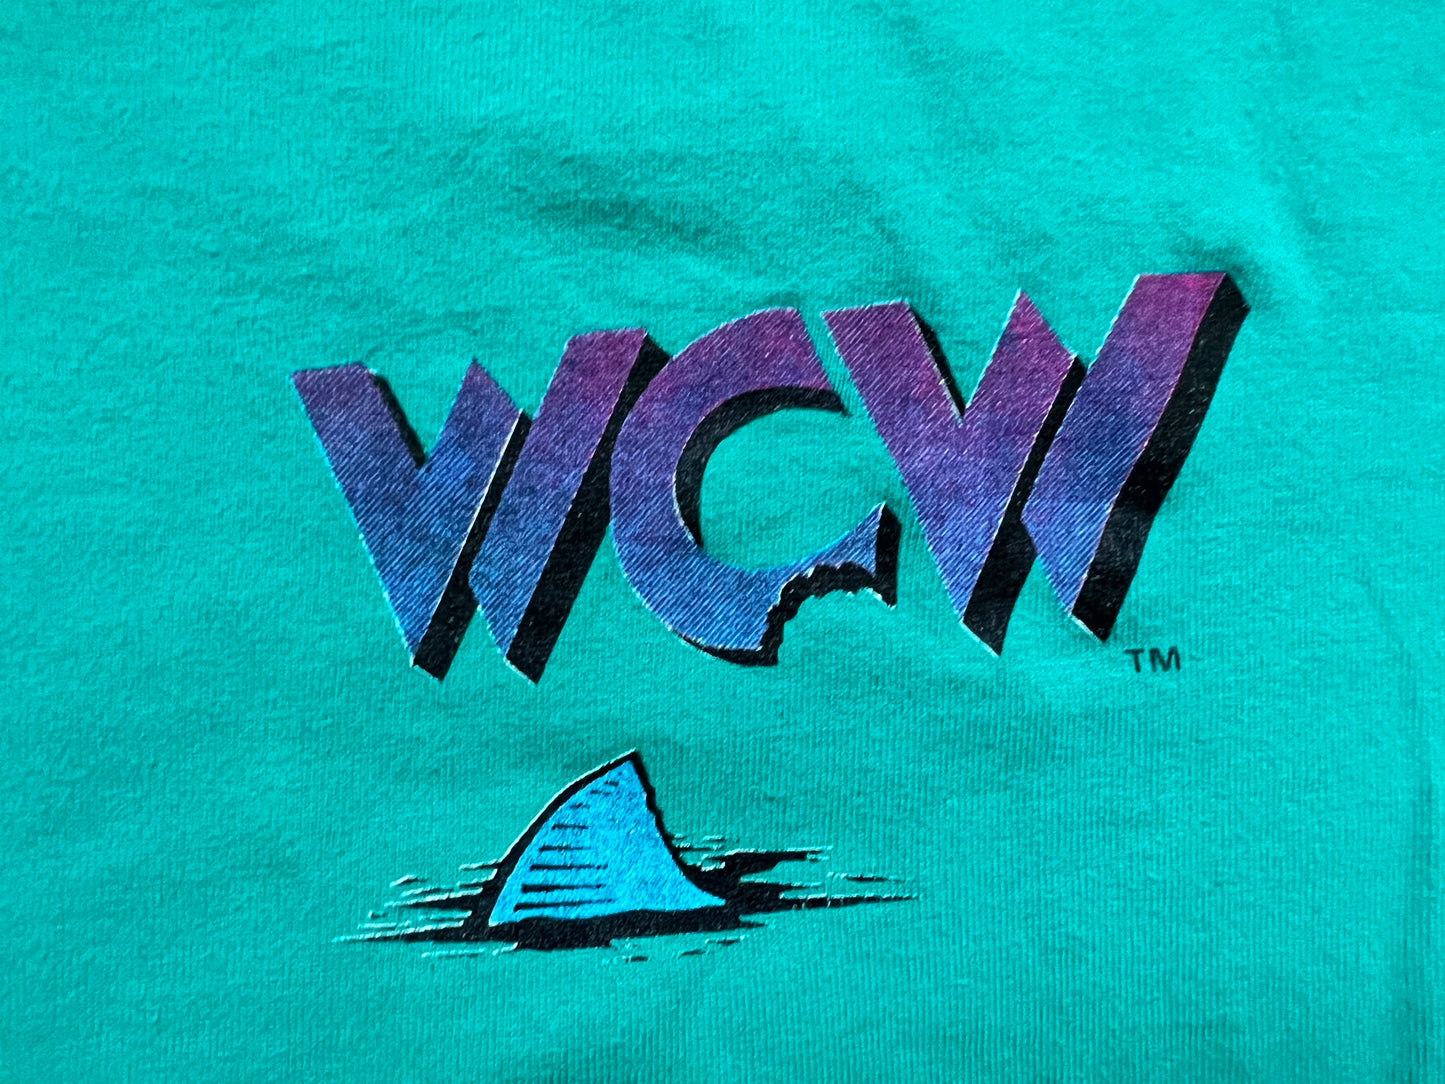 1996 WCW Bash at the Beach shirt